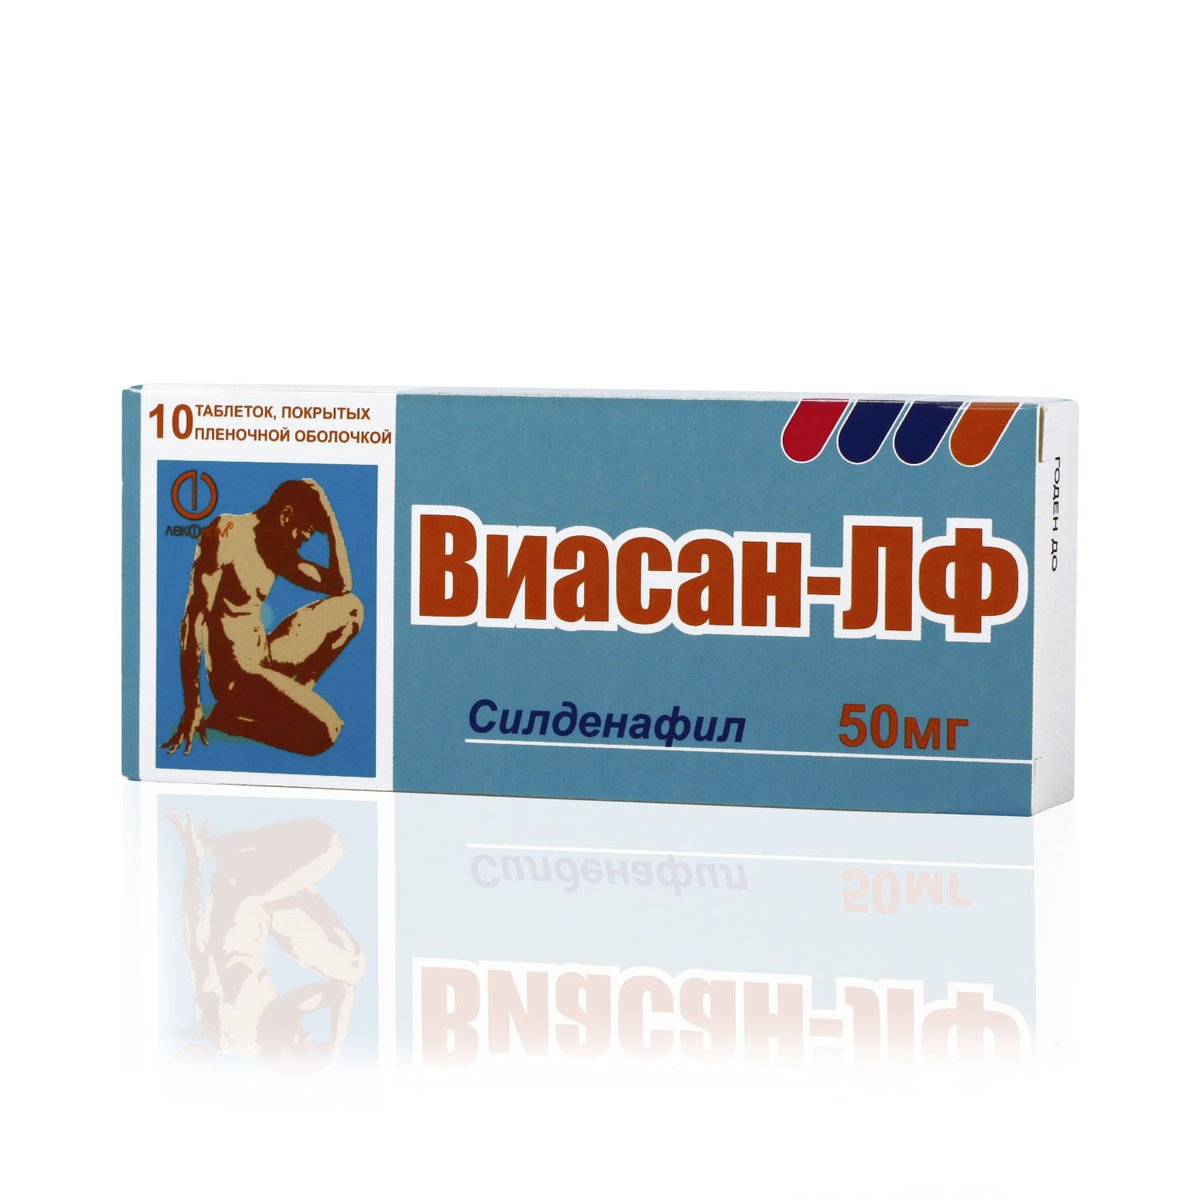 Виасан-лф (таблетки, 10 шт, 50 мг) - цена,  онлайн  .